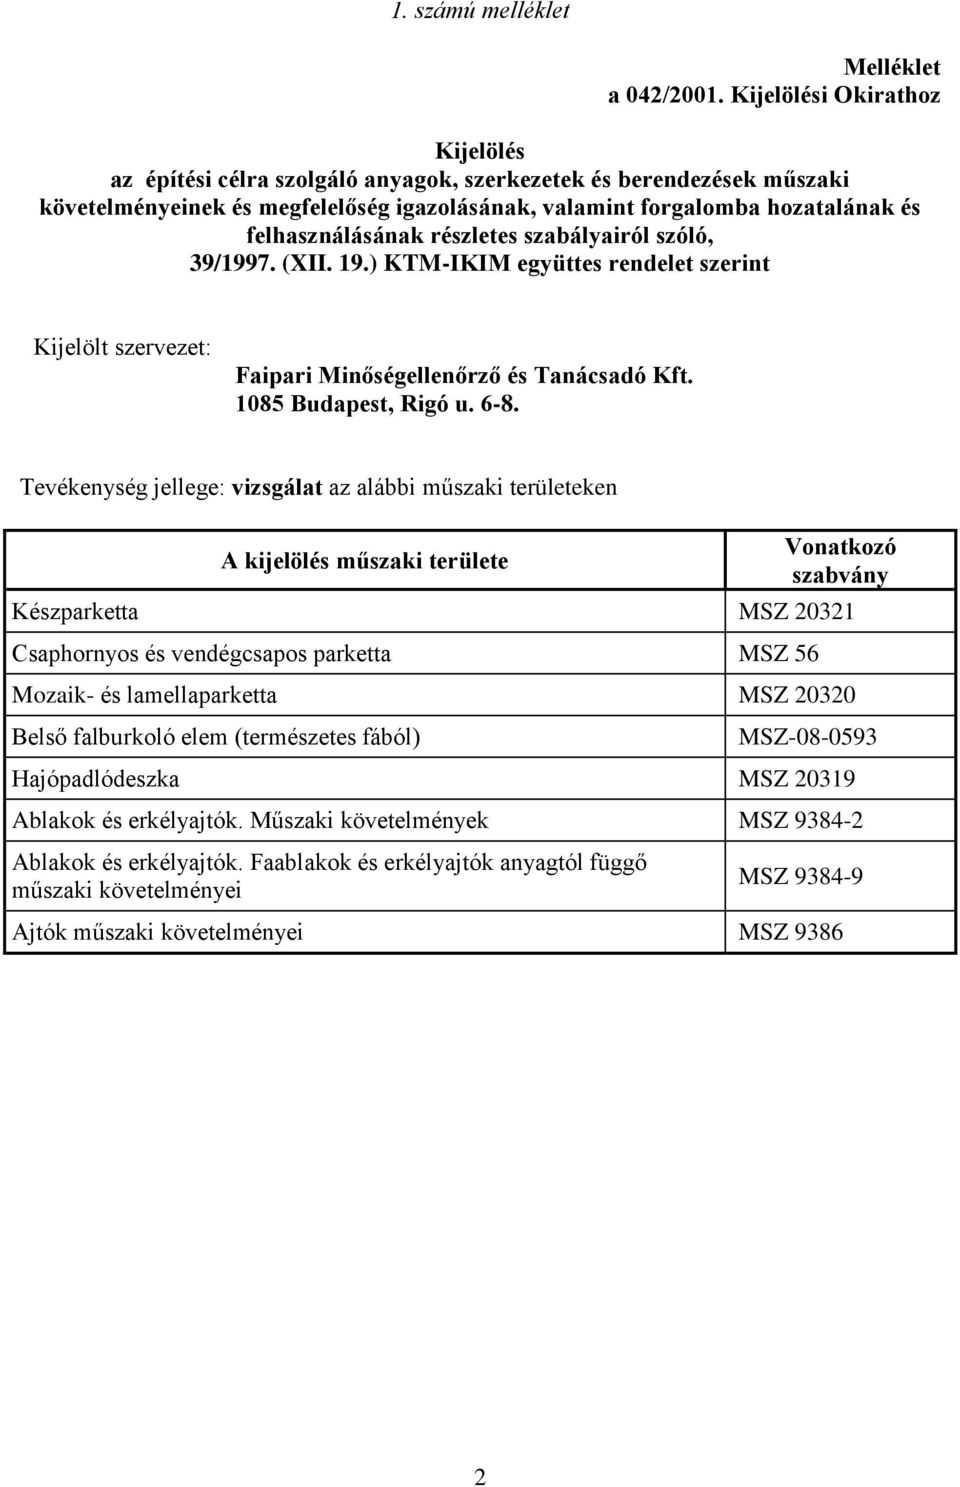 felhasználásának részletes szabályairól szóló, 39/1997. (XII. 19.) KTM-IKIM együttes rendelet szerint Kijelölt szervezet: Faipari Minőségellenőrző és Tanácsadó Kft. 1085 Budapest, Rigó u. 6-8.